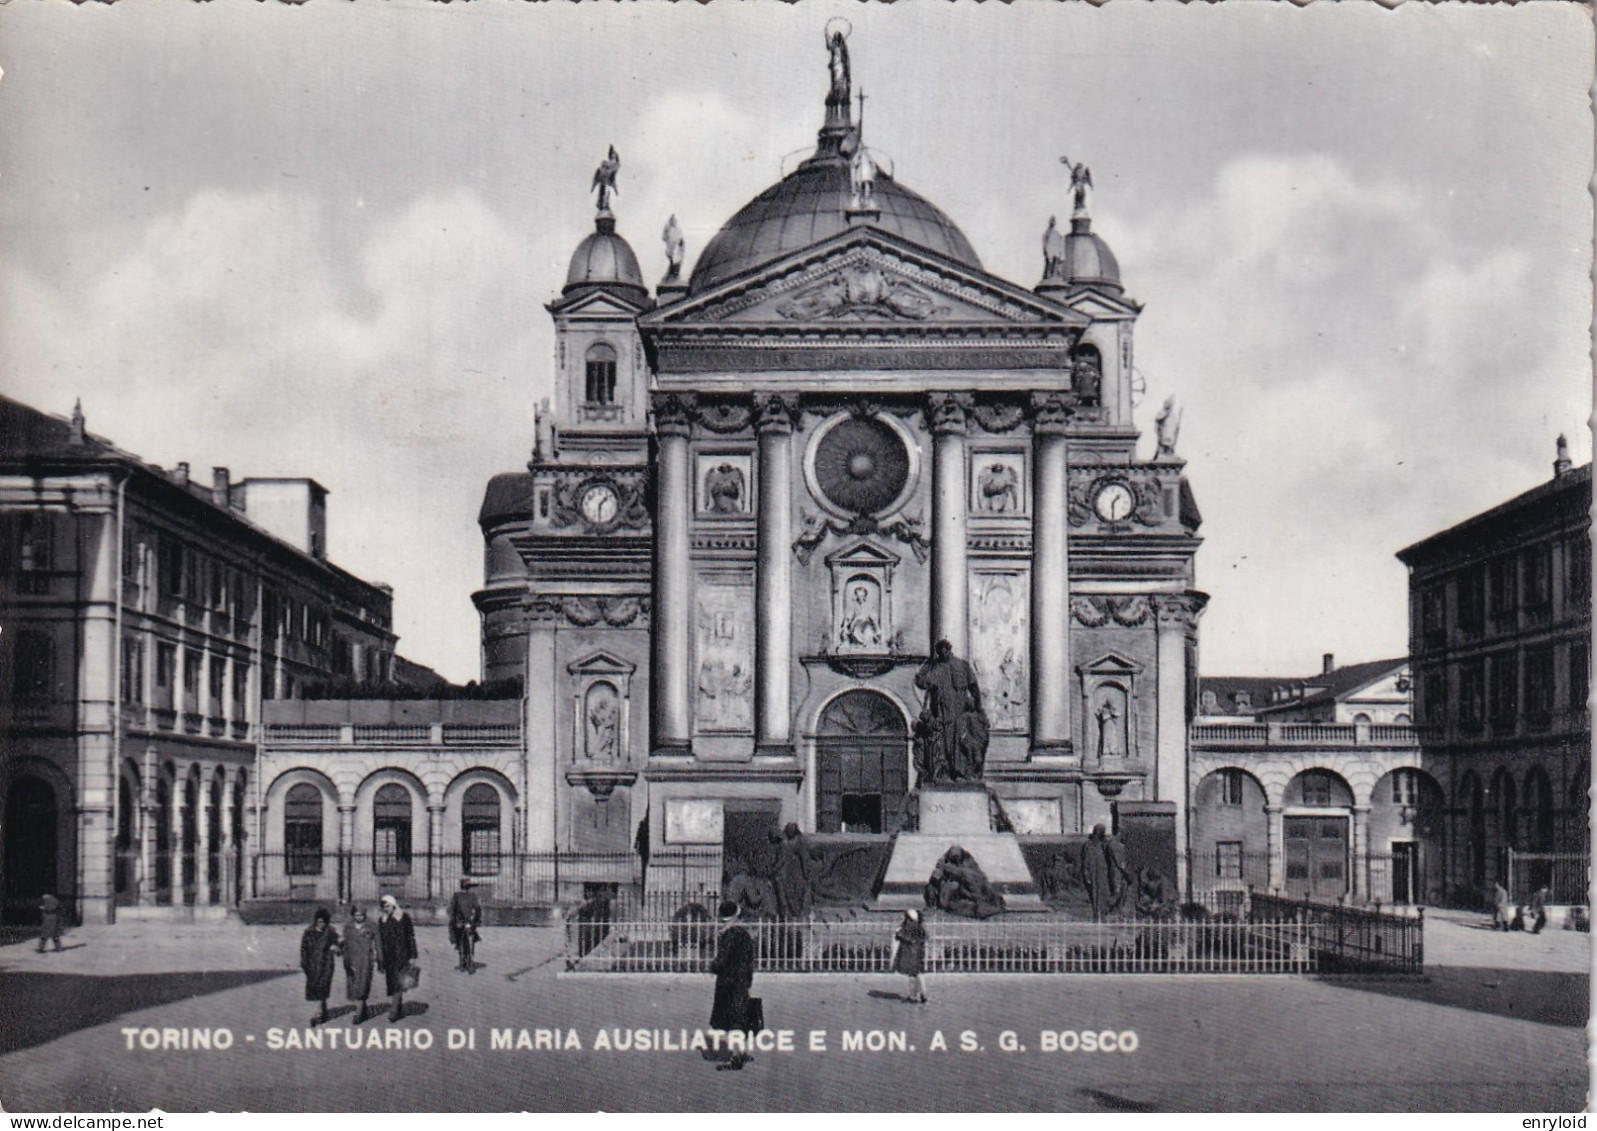 Torino Santuario Di Maria Ausiliatrice E Monumento Bosco - Andere Monumente & Gebäude